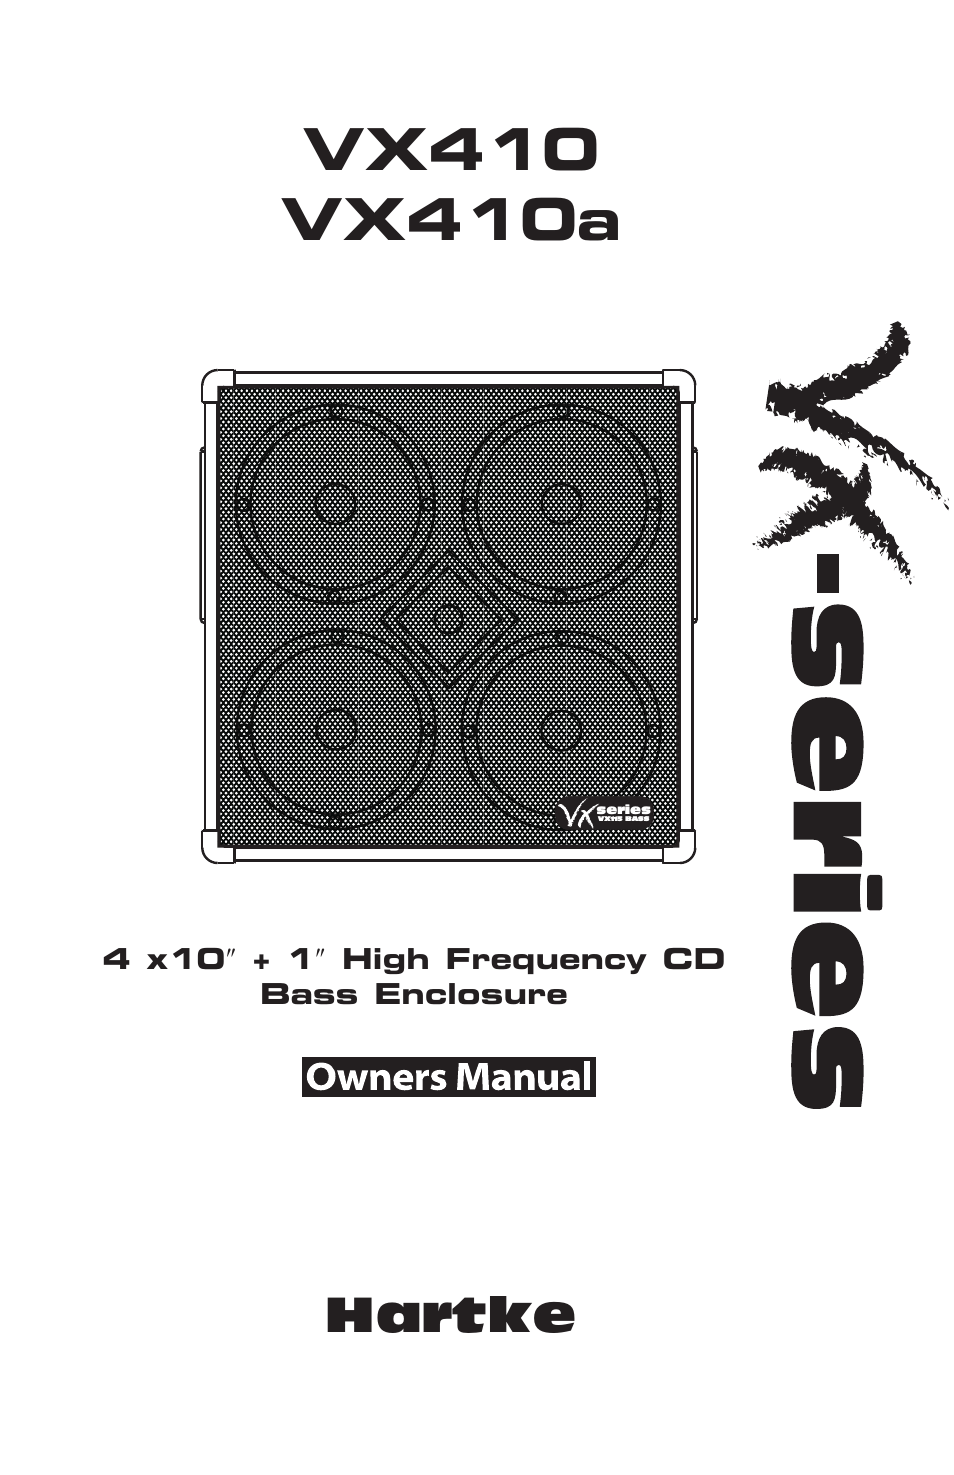 Bass Enclosure VX410